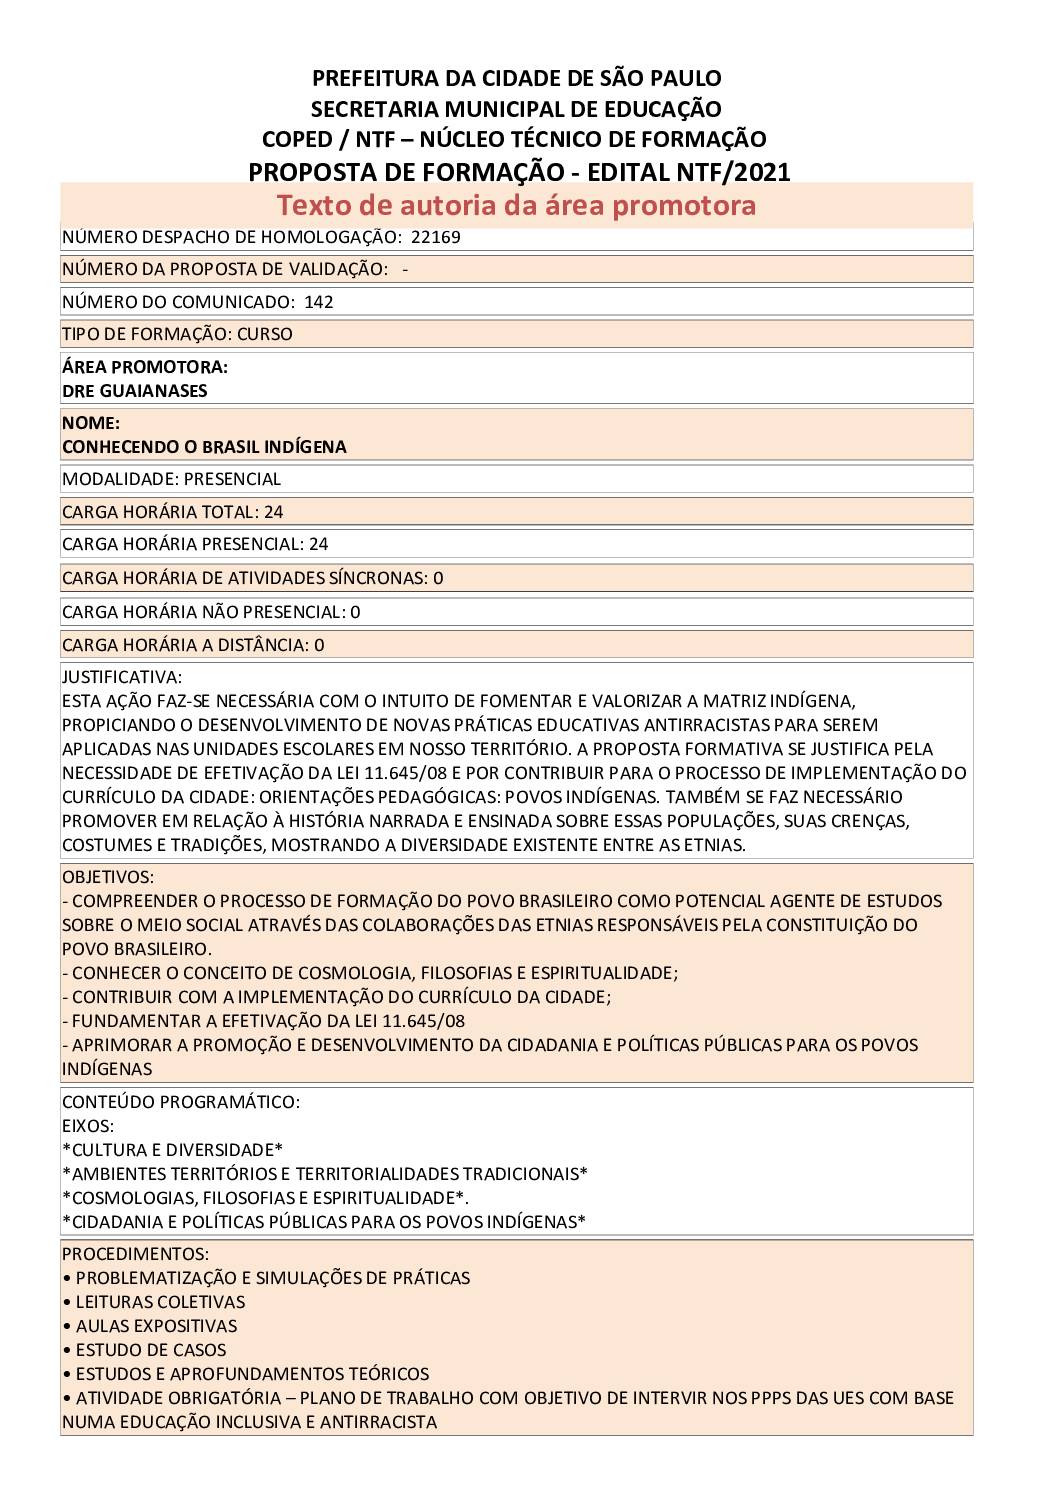 PDF com informações sobre o curso: CONHECENDO O BRASIL INDÍGENA